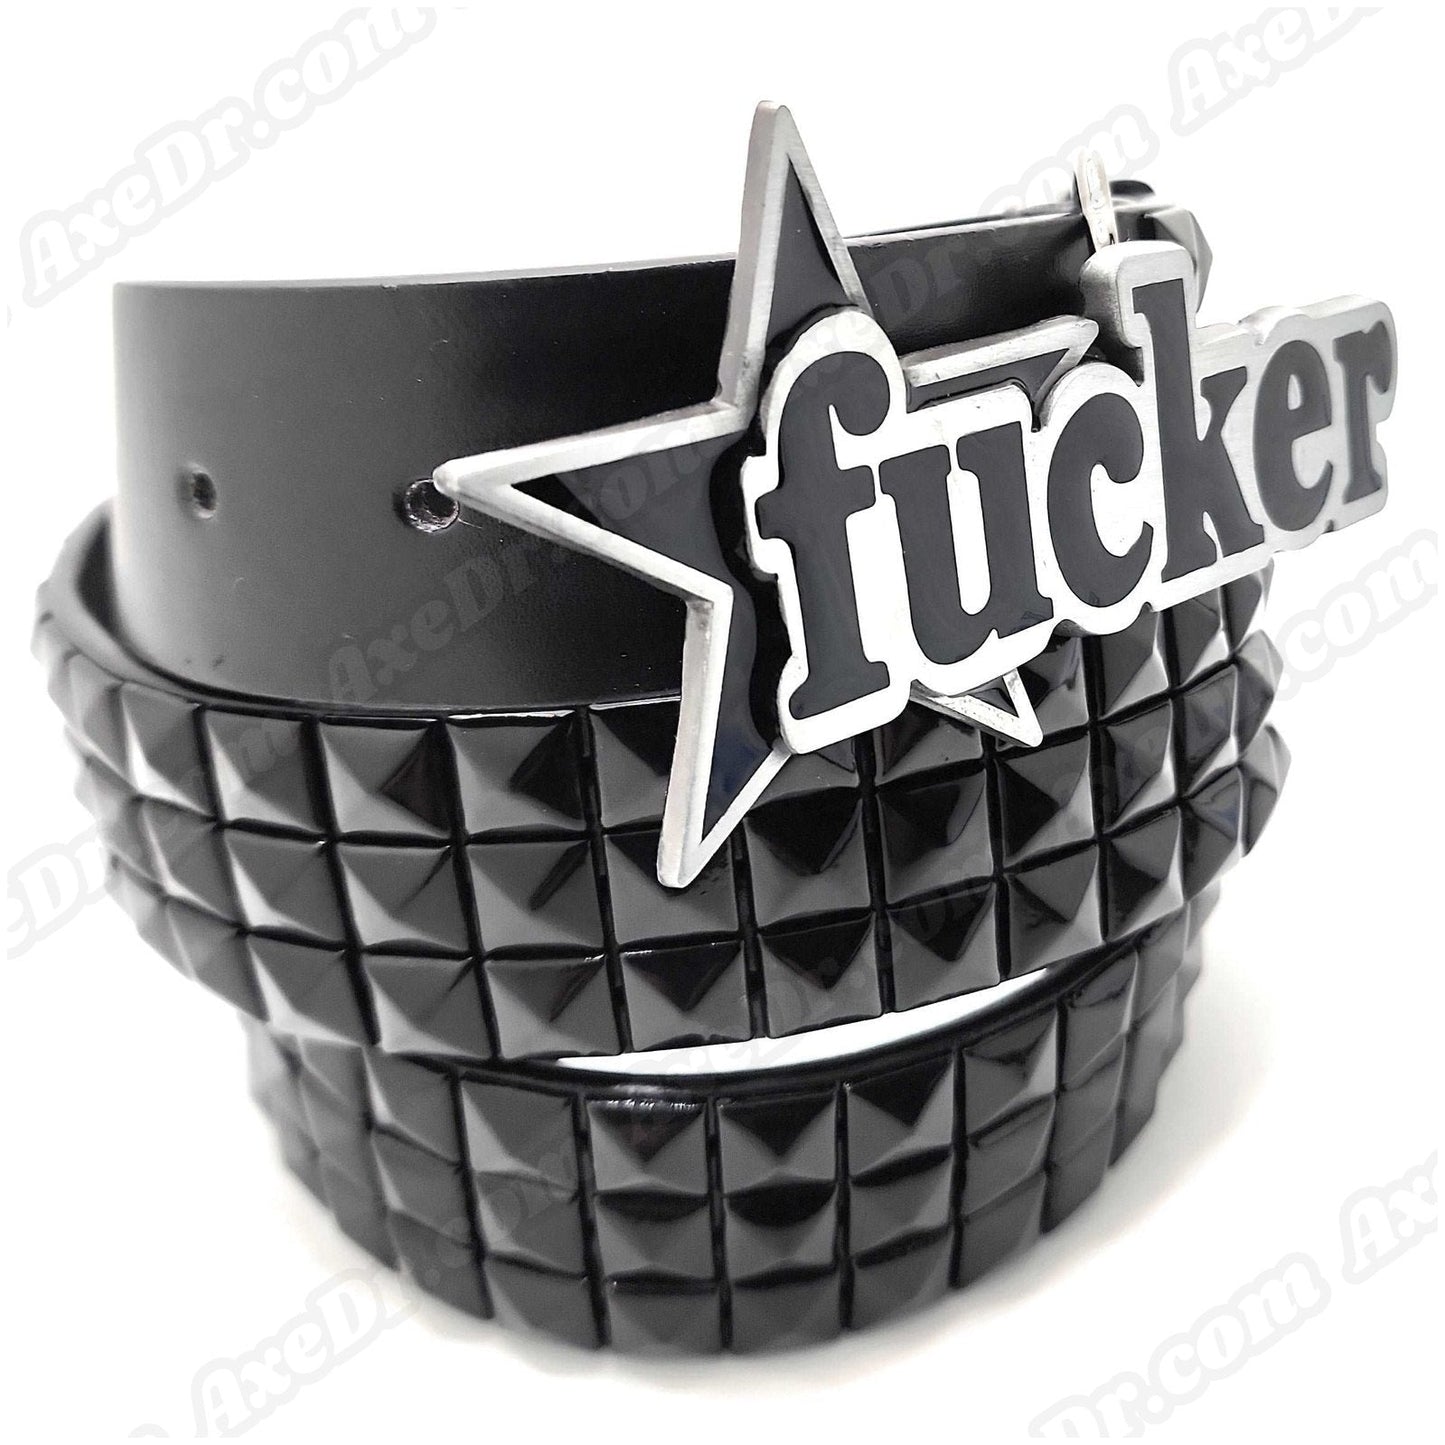 FCKER Nuatical Star Belt Buckle and Black Pyramid Studded Leather Belt shop.AxeDr.com Belt Buckle, Belt with Buckle, Bones, Buckles with Belt, Cocky, Funny, Funny Belt Buckle, Gag Gift, 